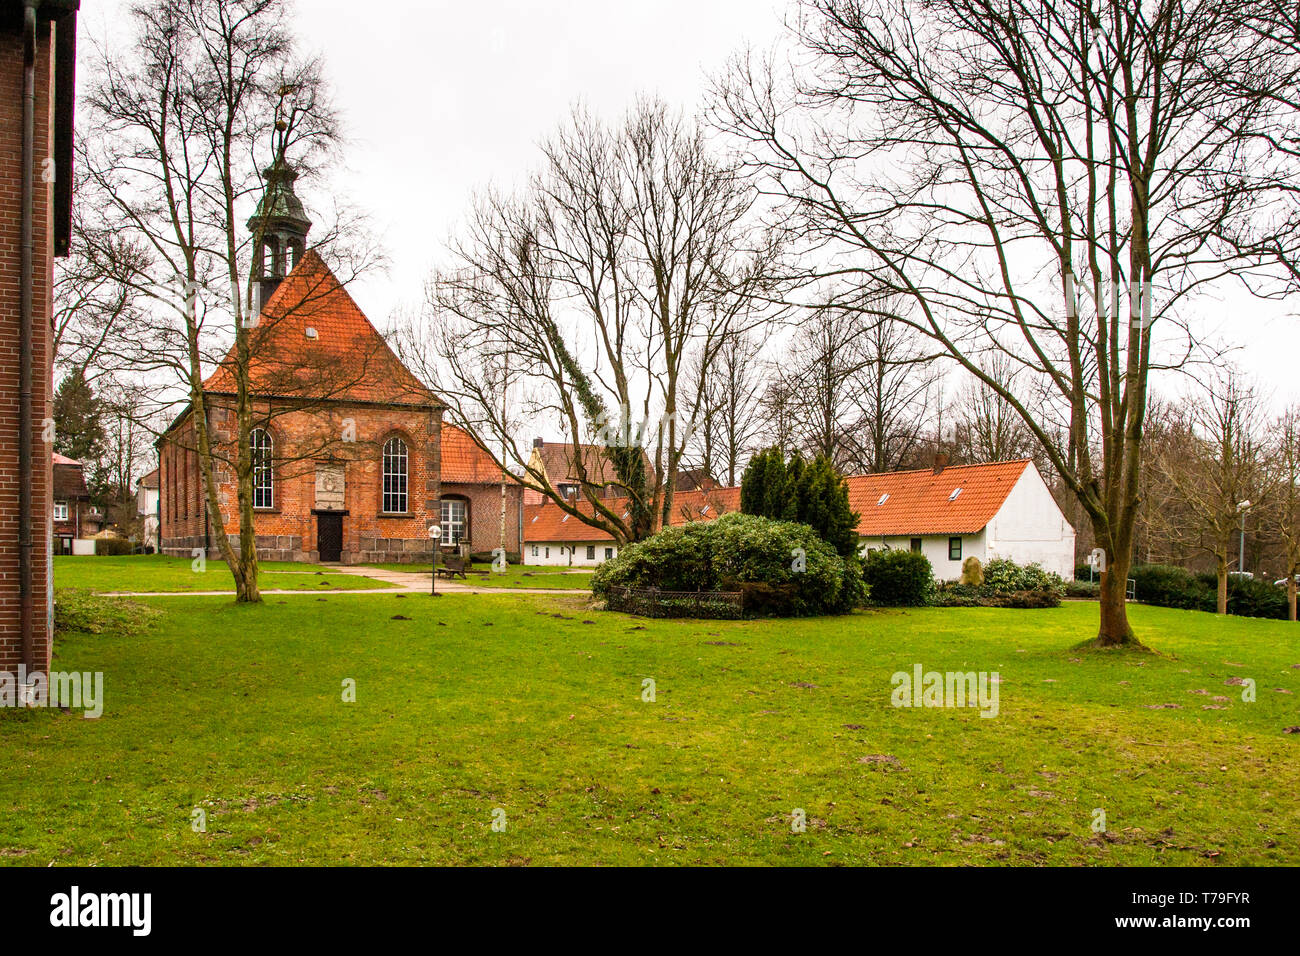 Gottesbuden in Ahrensburg, Deutschland. 22 Häuser (Gottes), die bedürftige Menschen für den symbolischen Betrag von weniger als einem Euro gemietet werden Stockfoto